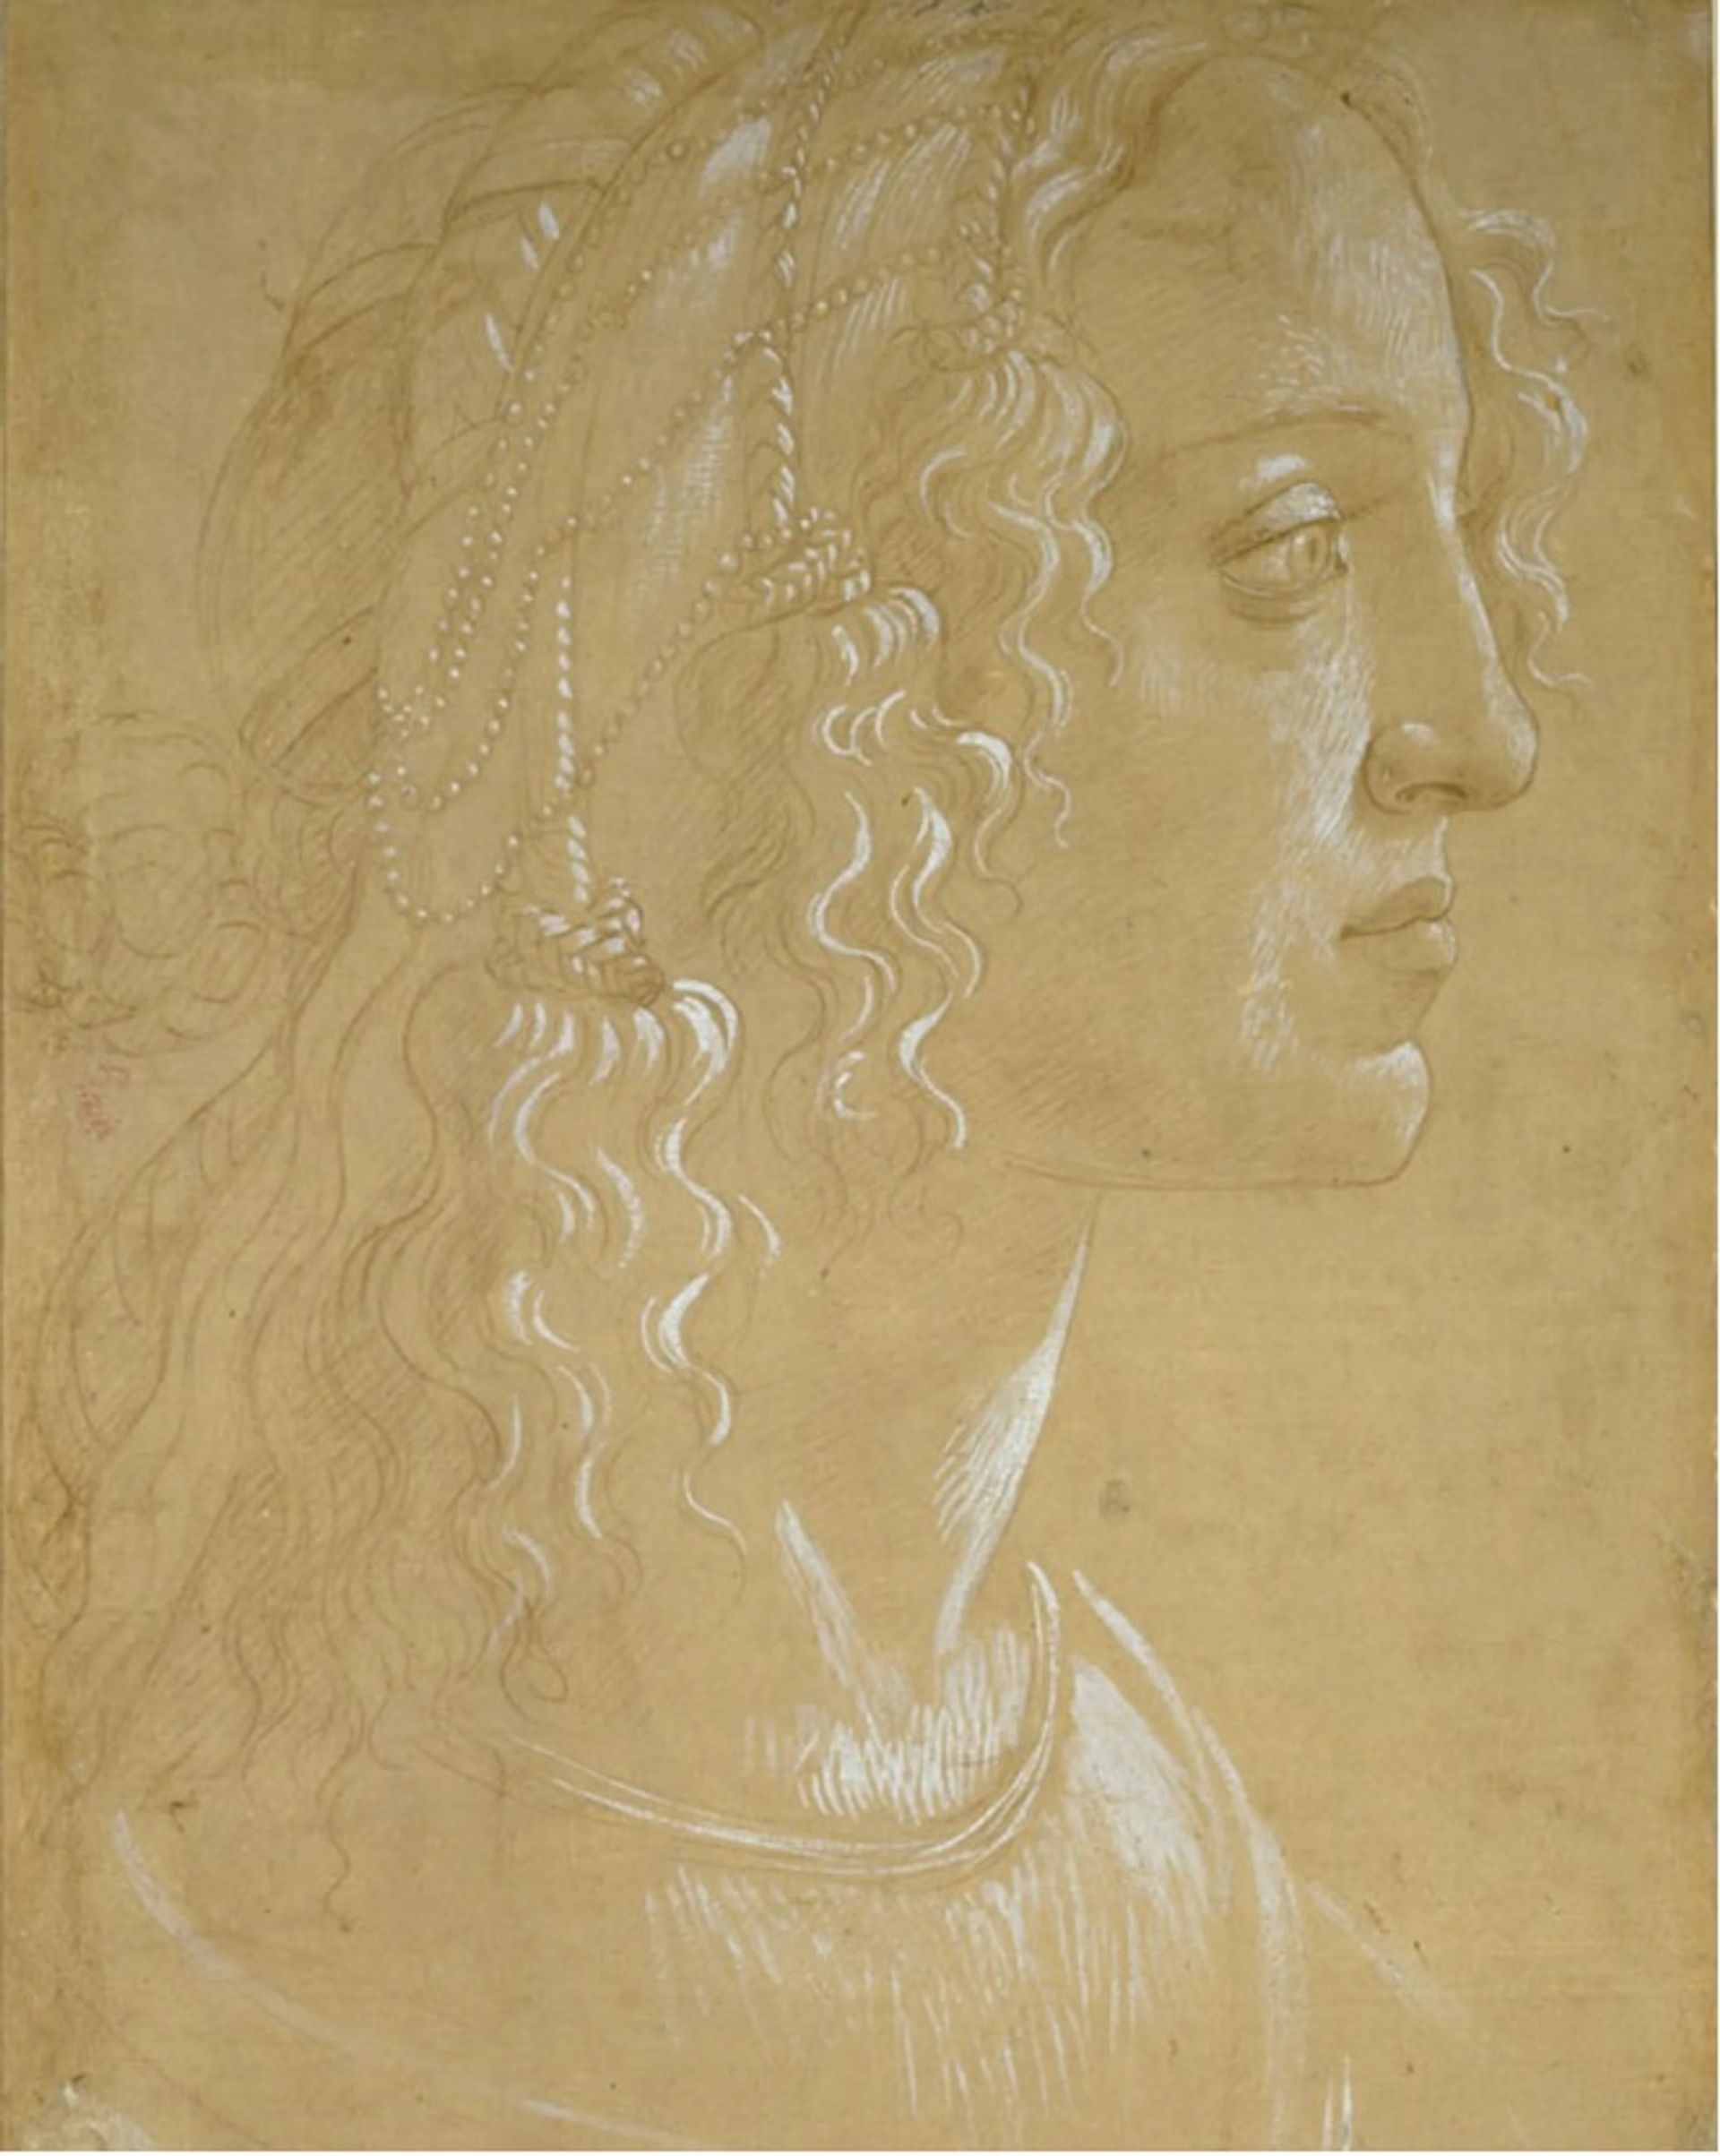 המחקר של סנדרו בוטיצ'לי של ראש אישה בפרופיל "לה בלה סימונטה" (בסביבות 1485) צויר באמצעות גואש לבן על נייר מוכן בצבע חום בהיר

©️ מוזיאון אשמולאן